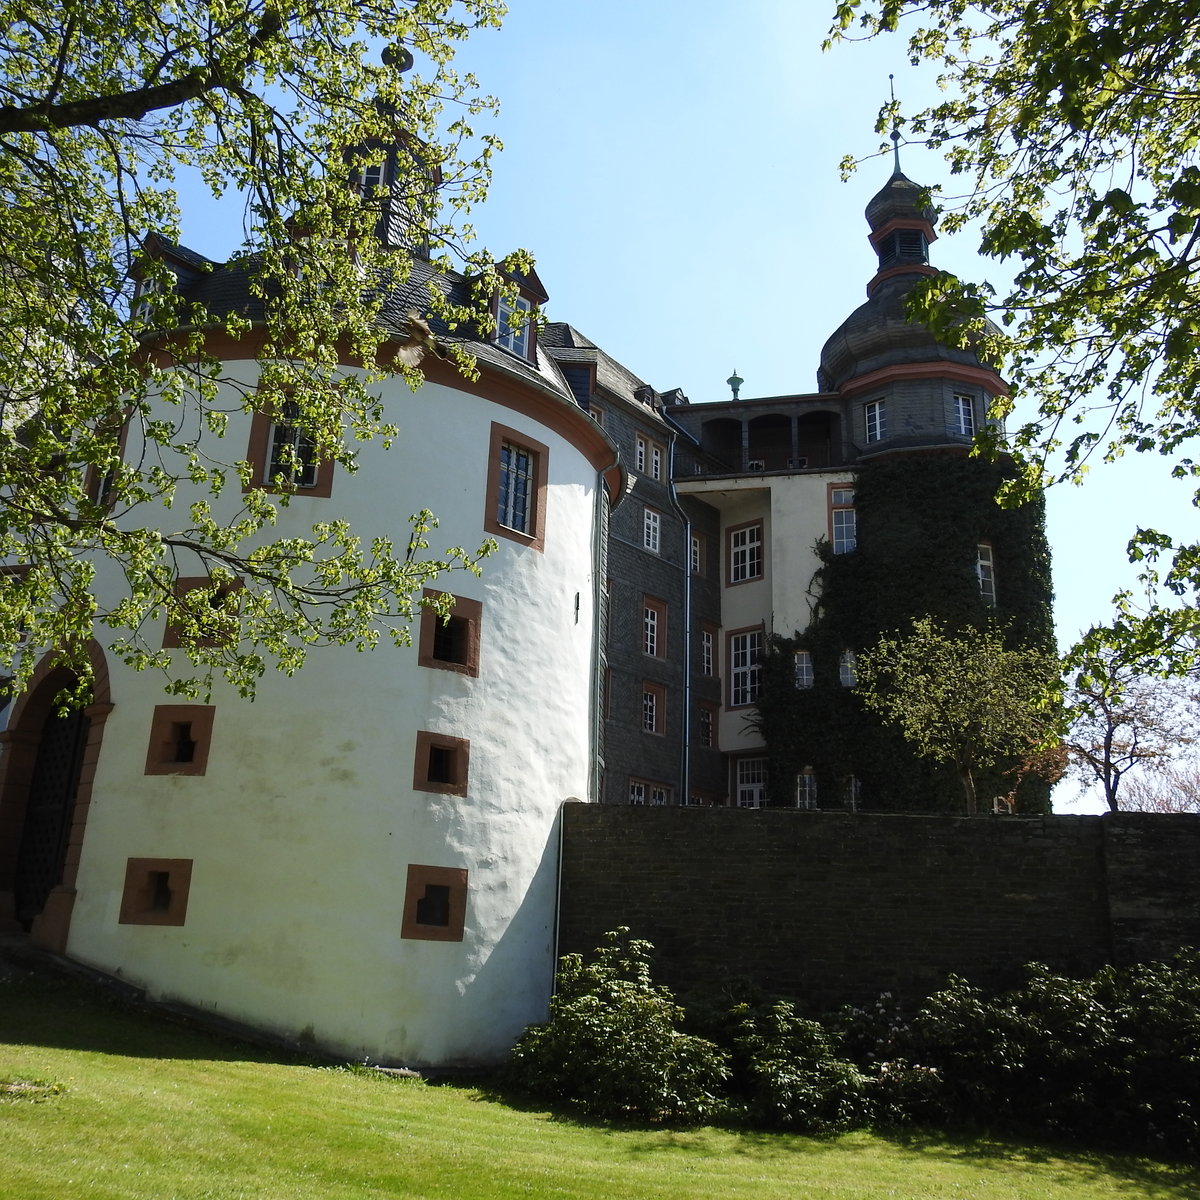 BAD BERLEBURG-SCHLOSS/RCKSEITE
In der Stadt im Rothaargebirge befindet sich auf einer Anhhe ber der Stadt ein mchtiges Schloss,dessen Anfnge auf eine Hhenburg aus dem 13. Jhdt. zurckgehen-
hier ein Bild von der Rckseite,dem Schlosspark aus,gesehen,am 10.5.2017...